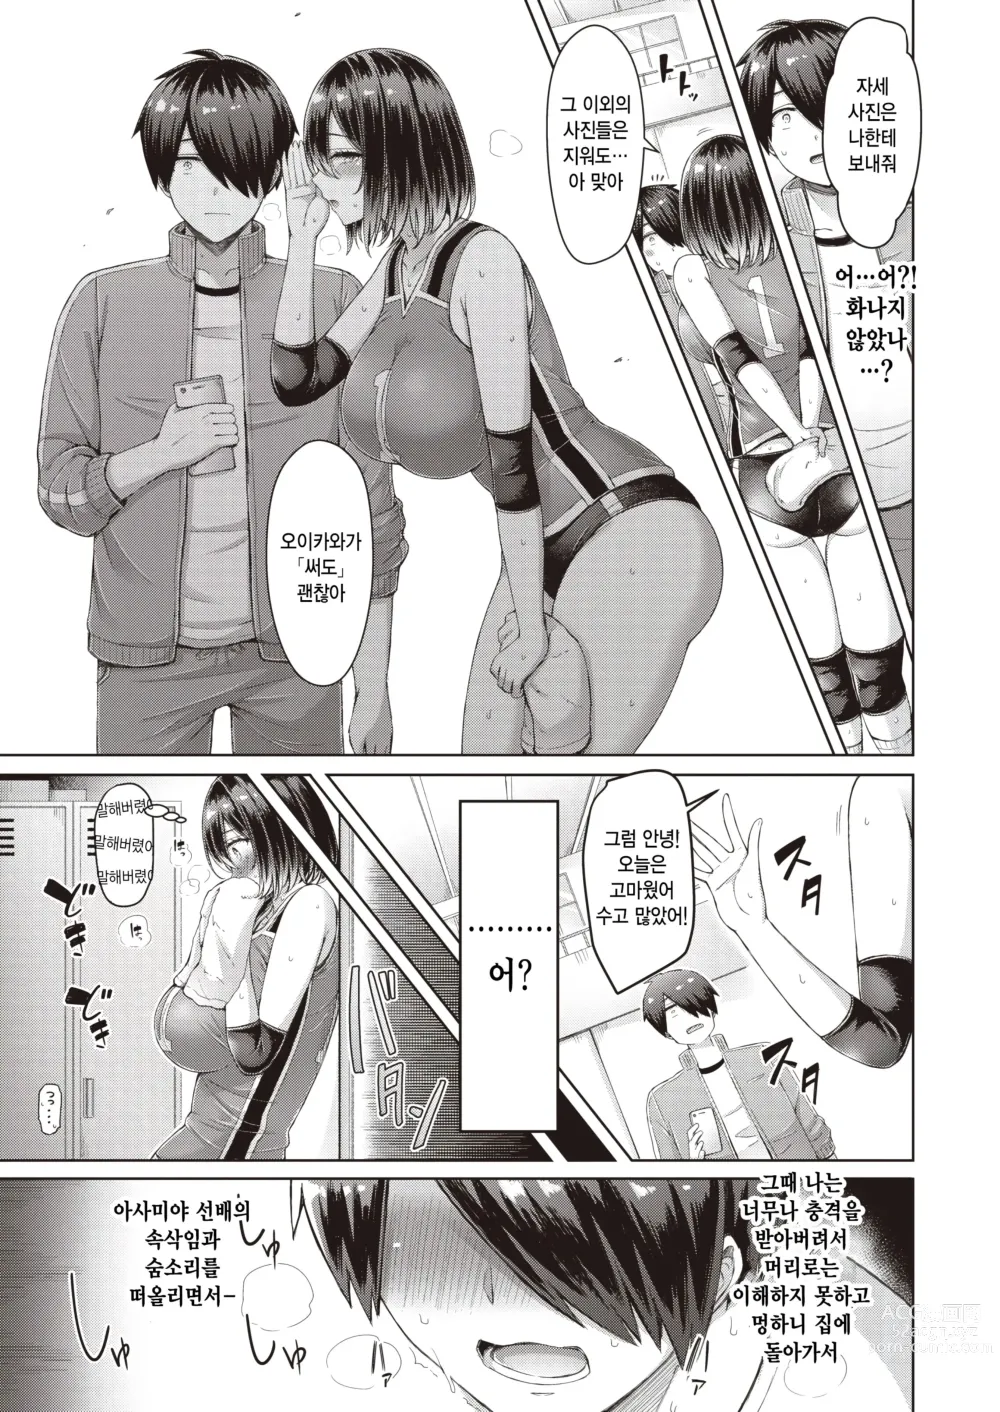 Page 5 of manga Quickspike!